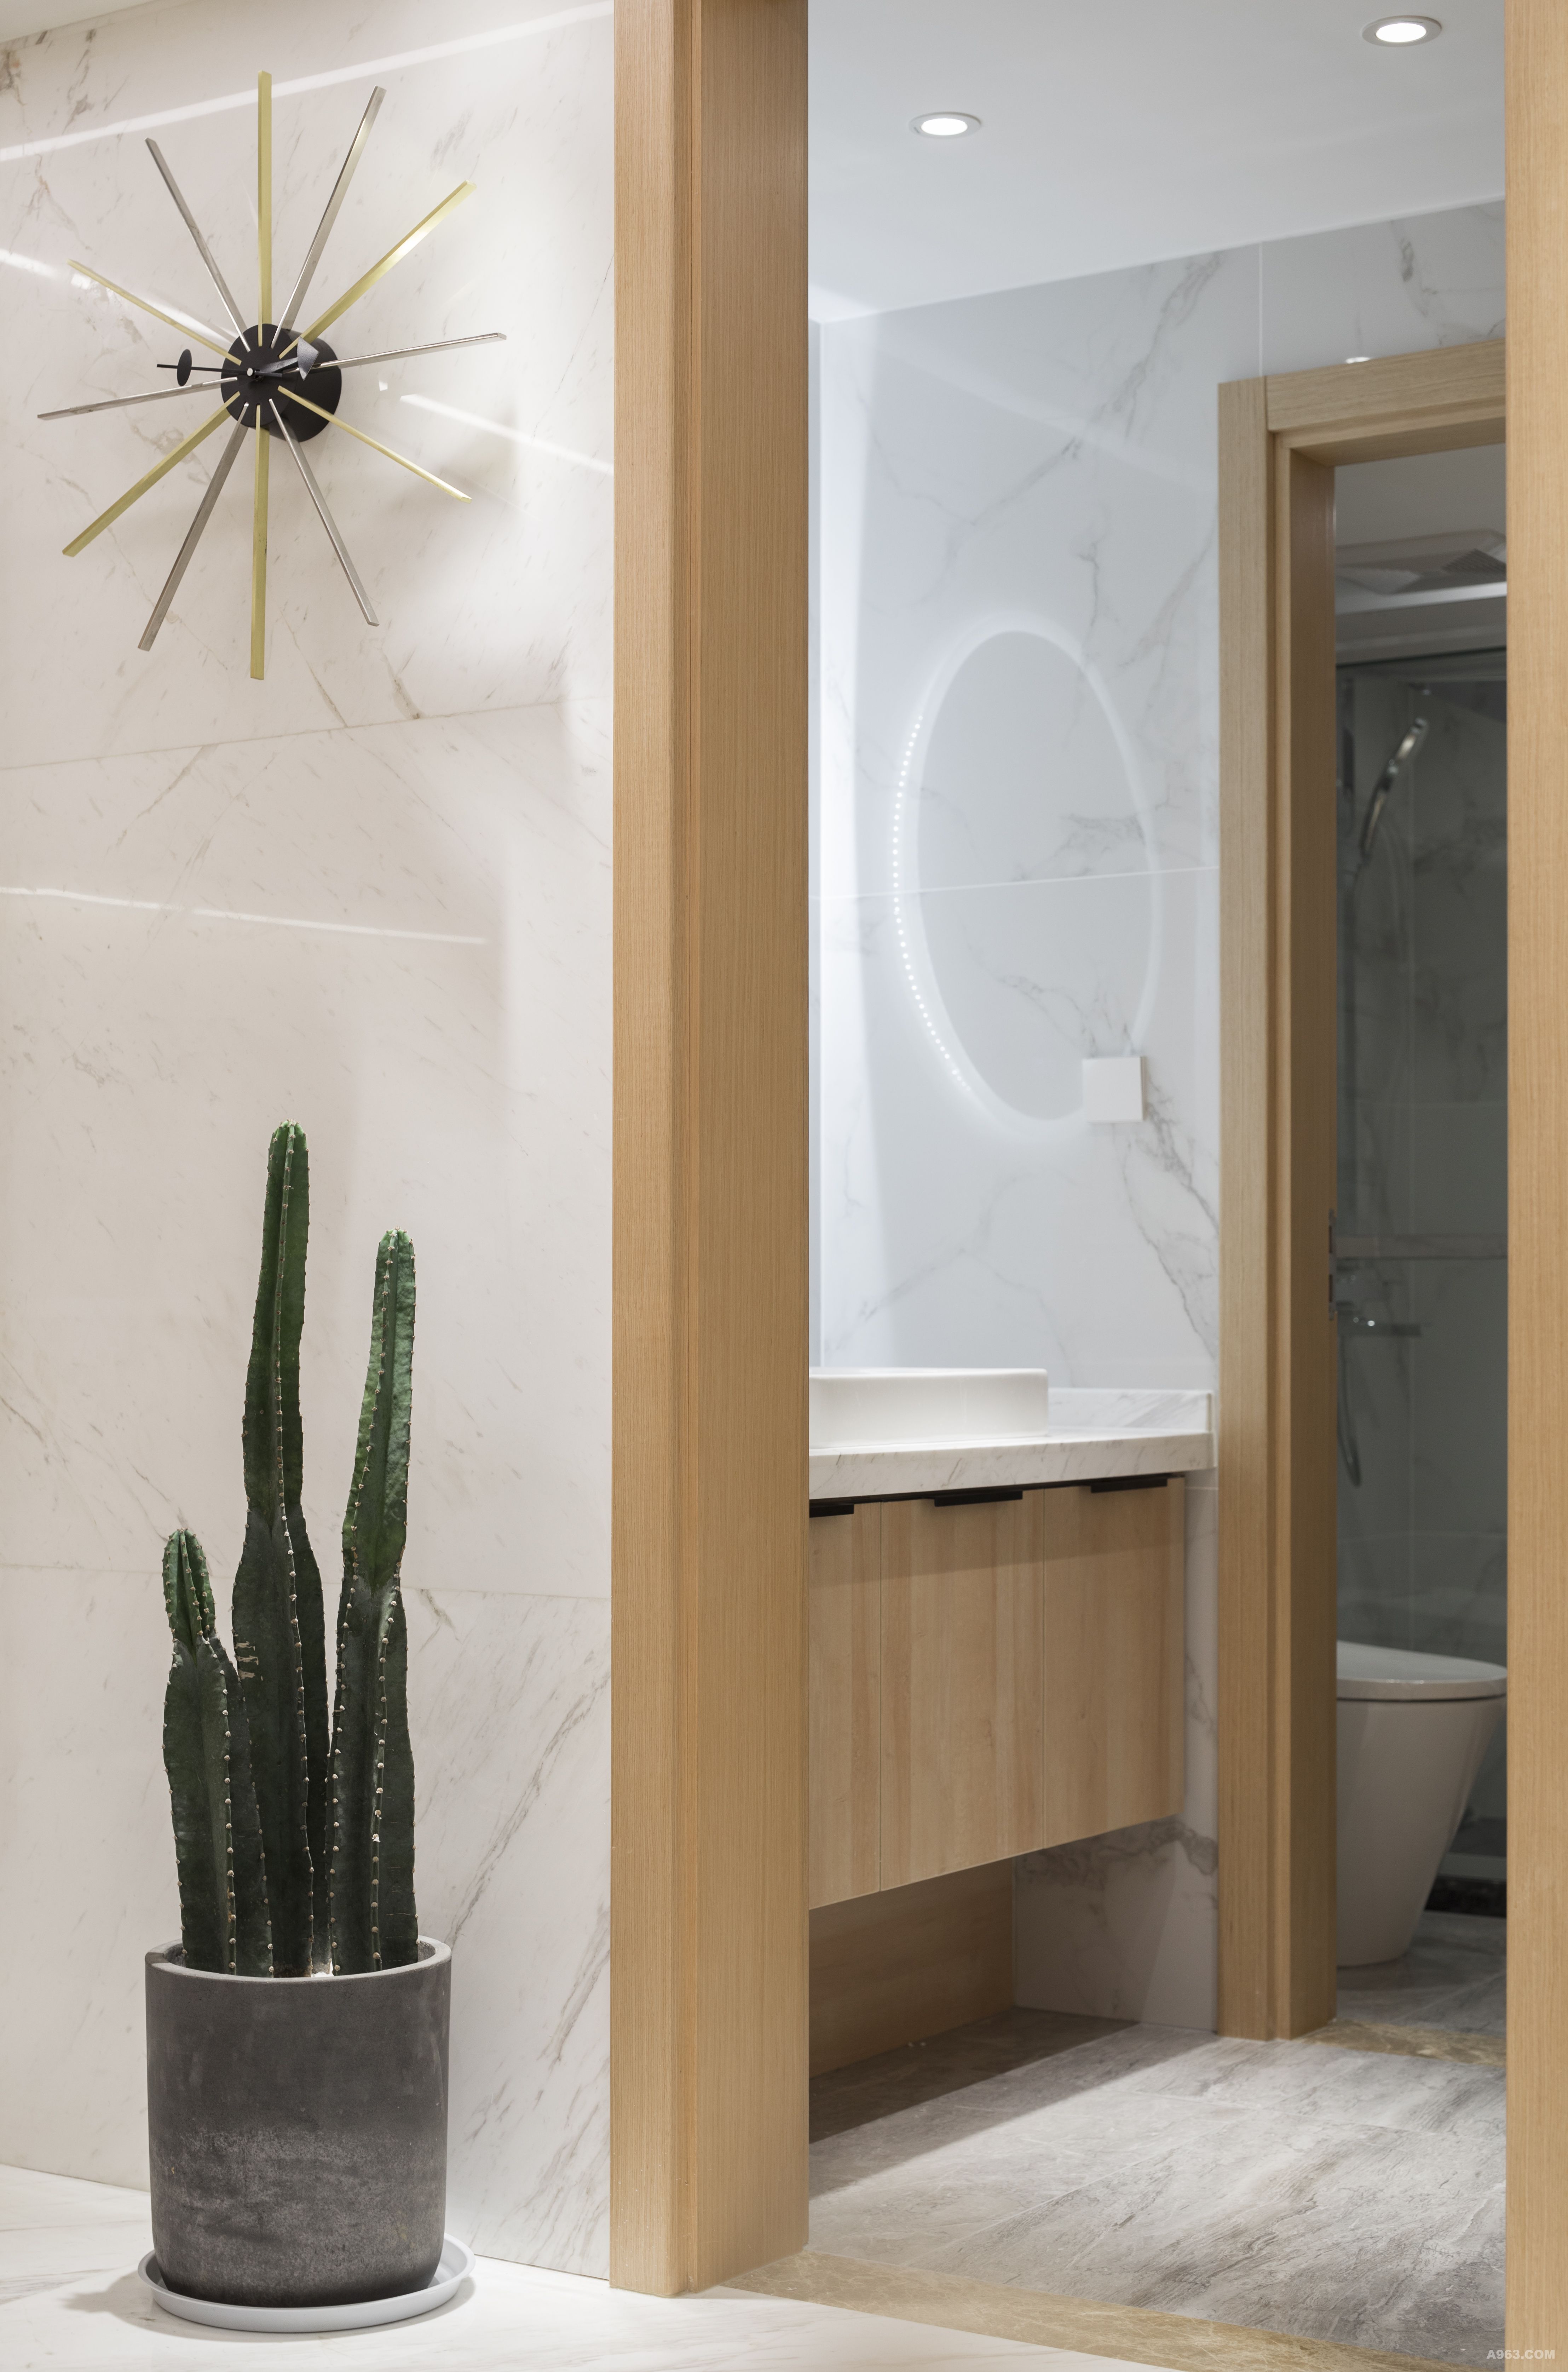 本案是开放性的卫生间，墙地面用灰色的砖作为过渡，镜面的效果现代感十足。采用大理石纹路的砖铺贴，形成视觉对比。